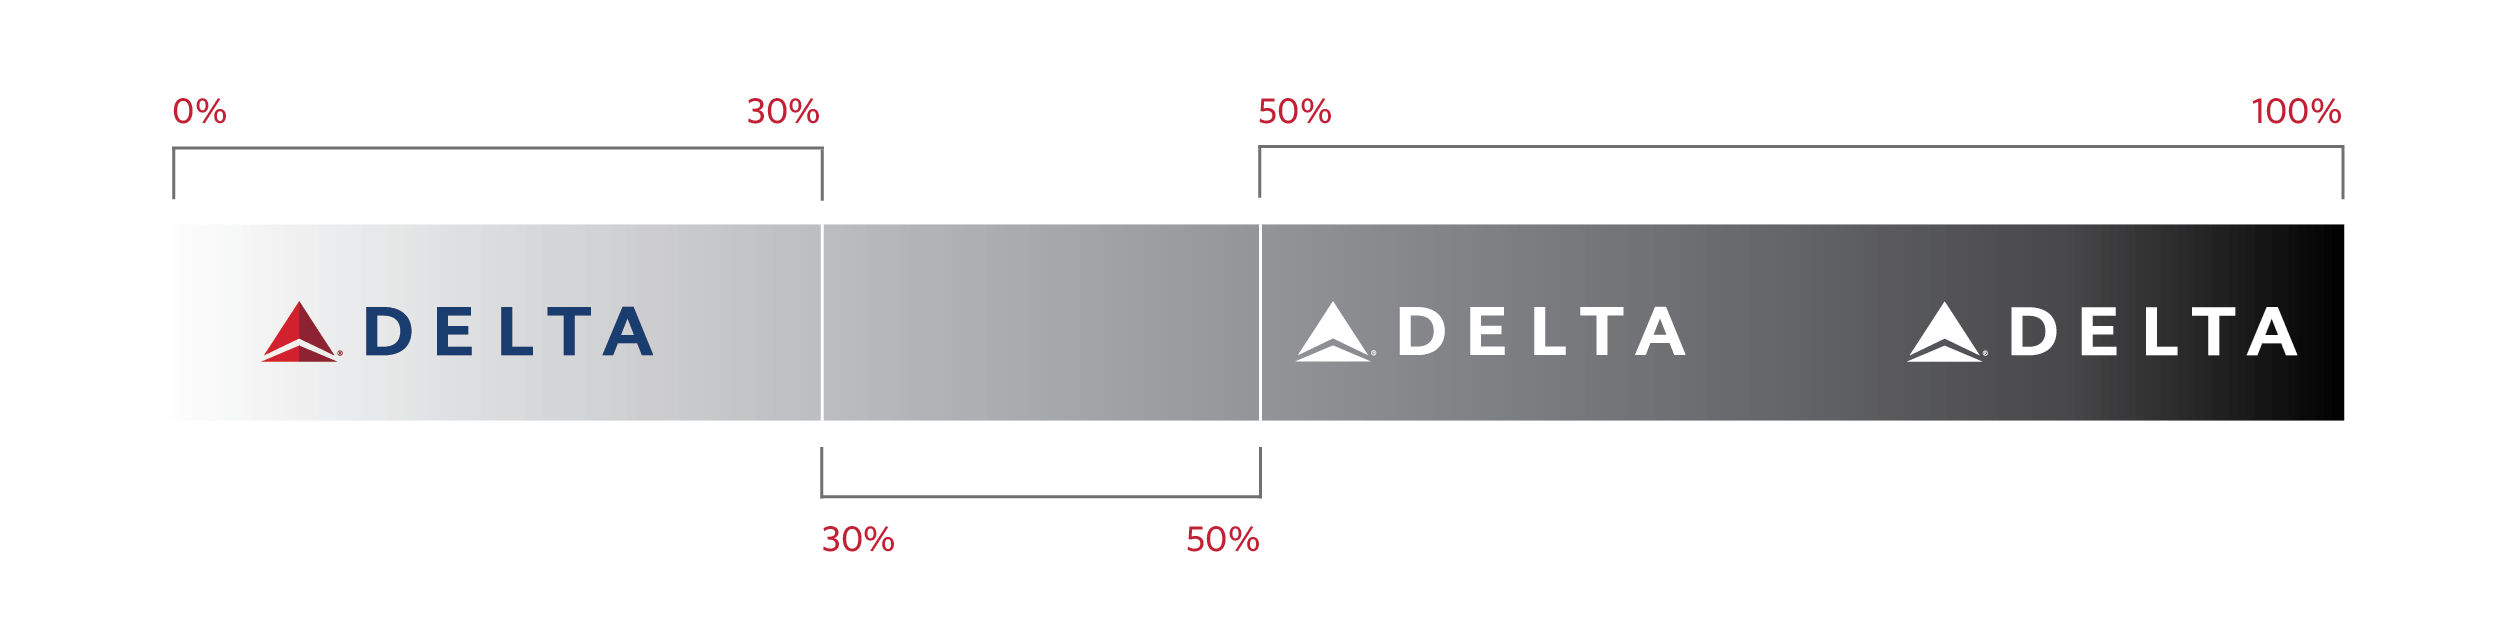 Delta Airlines Logo - Delta Logos | Delta News Hub